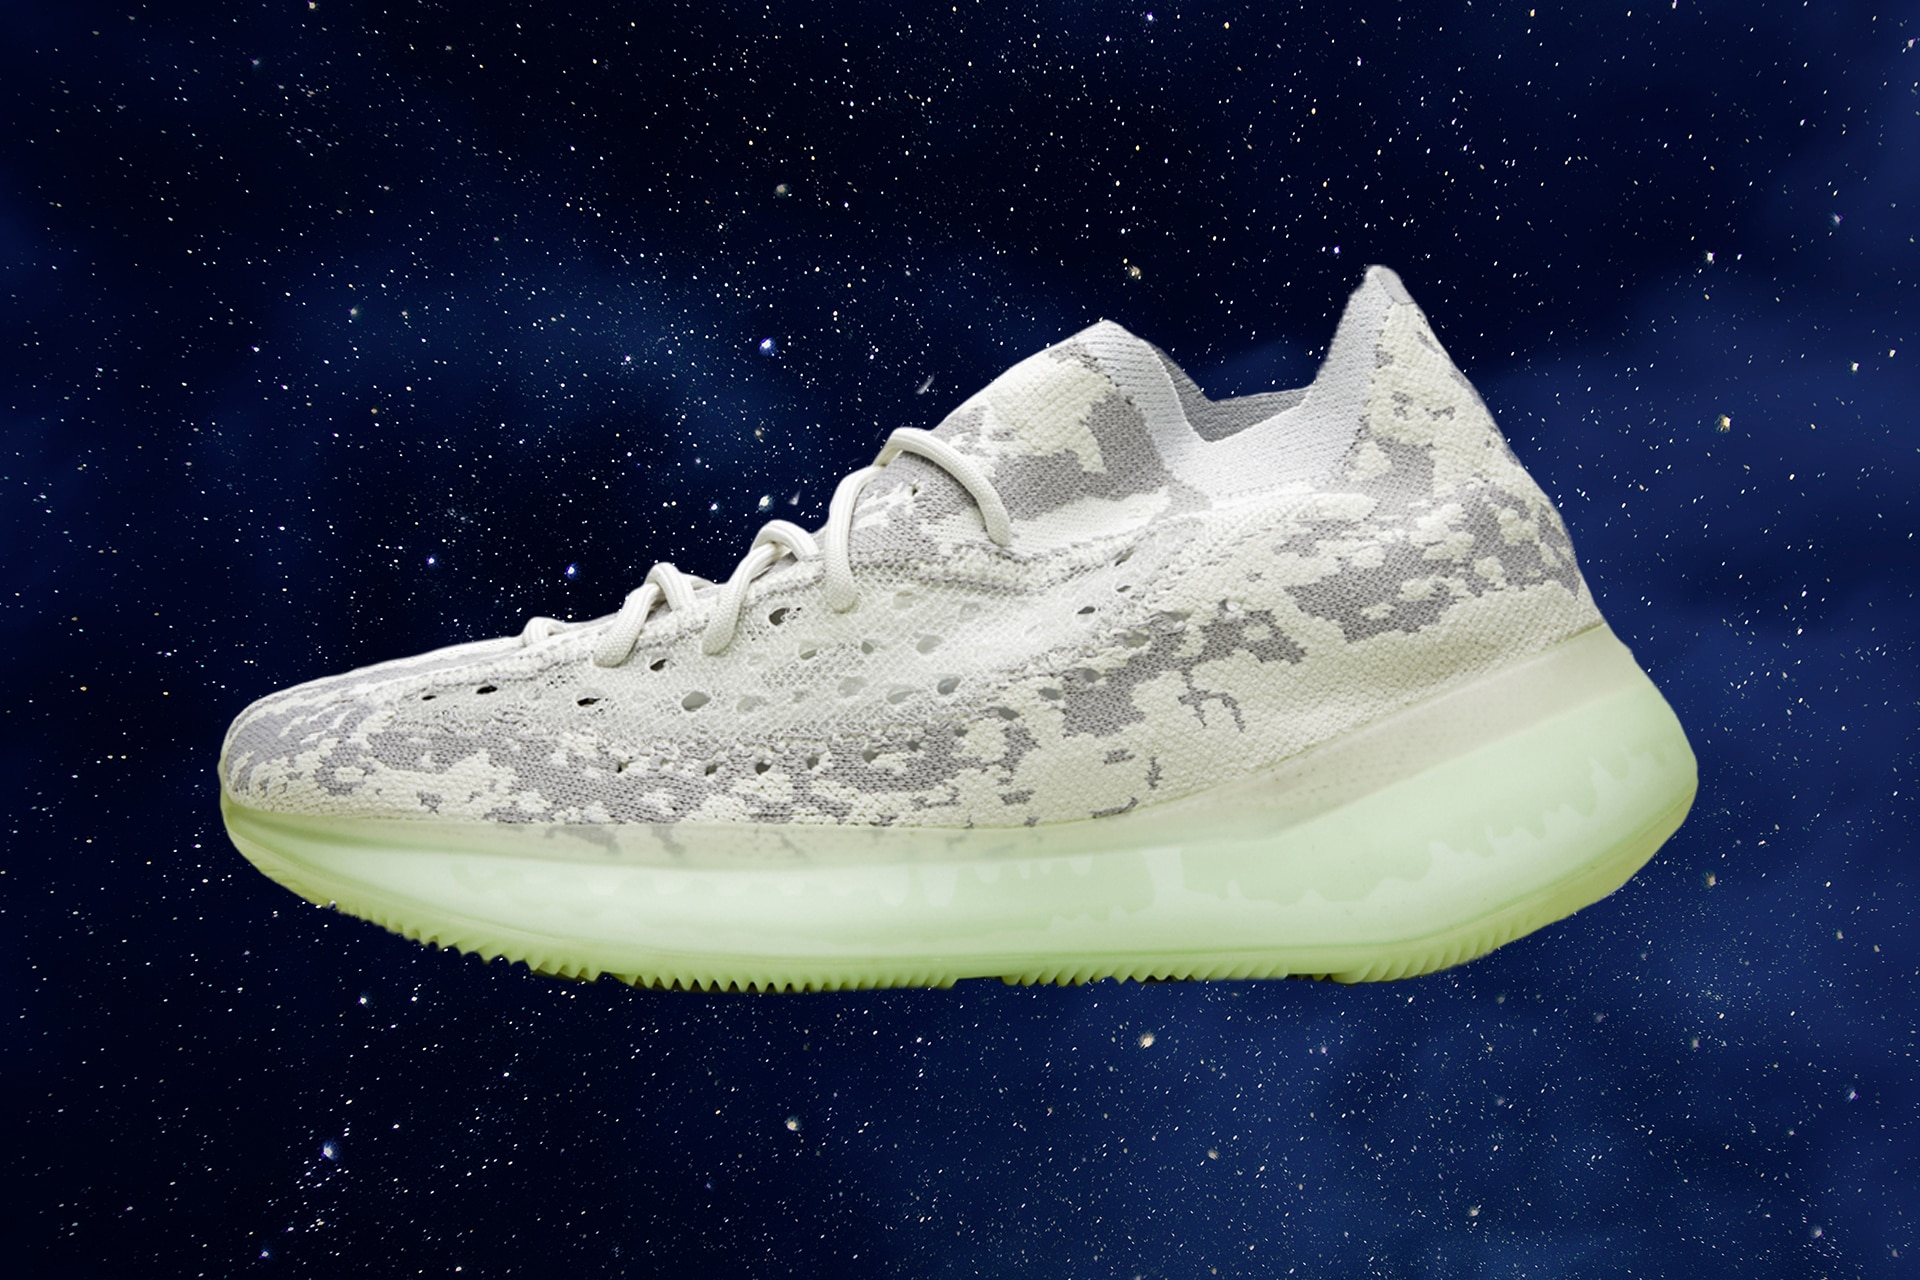 Yeezy's New Sneaker Model Is Alien Both 